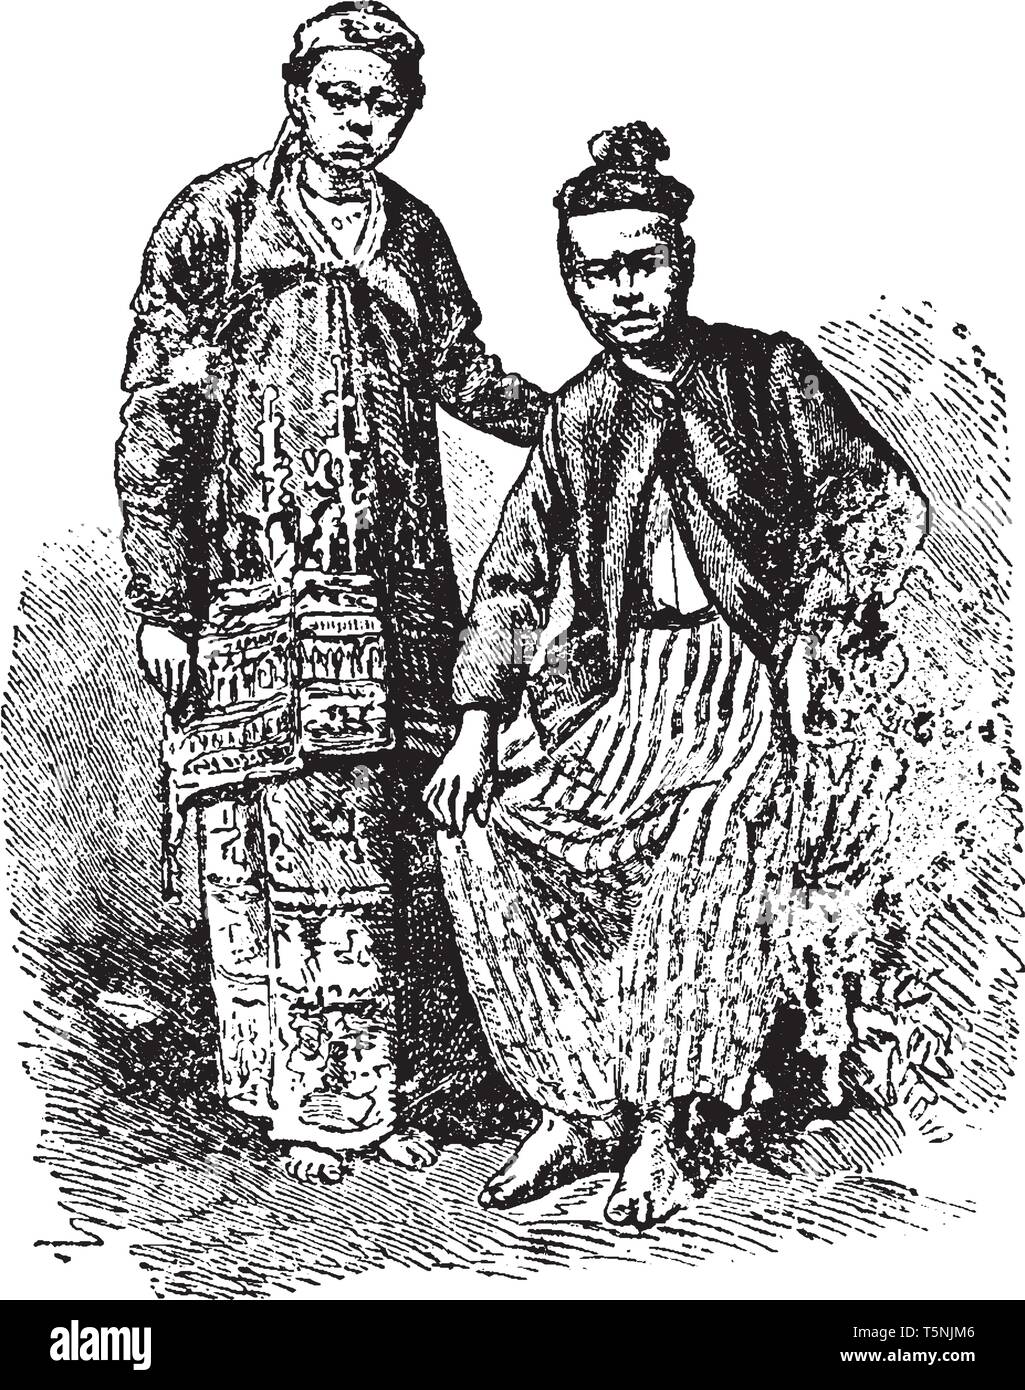 Burmesischen Paar ist ein Bürger des Landes der Union Myanmar, vintage Strichzeichnung oder Gravur Abbildung. Stock Vektor